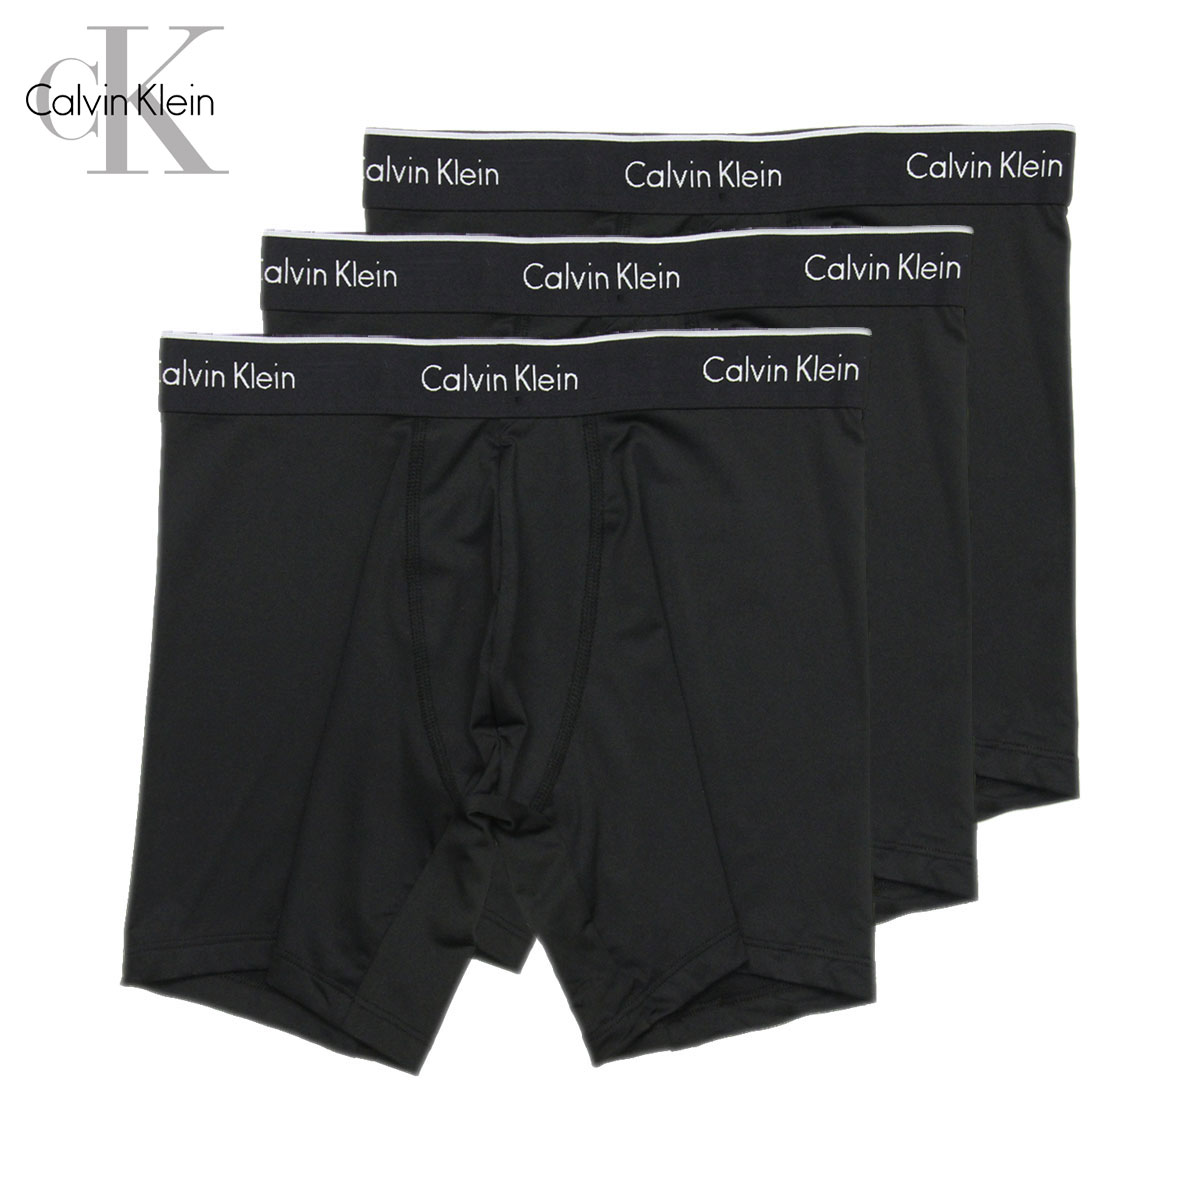 カルバンクライン ボクサーブリーフ メンズ 正規品 Calvin Klein アンダーウェア ボクサーブリーフ 下着 3枚セット マクロファイバー  3PACK MICROFIBER BOXER BRIEFS | ブランド品セレクトショップ MIXON